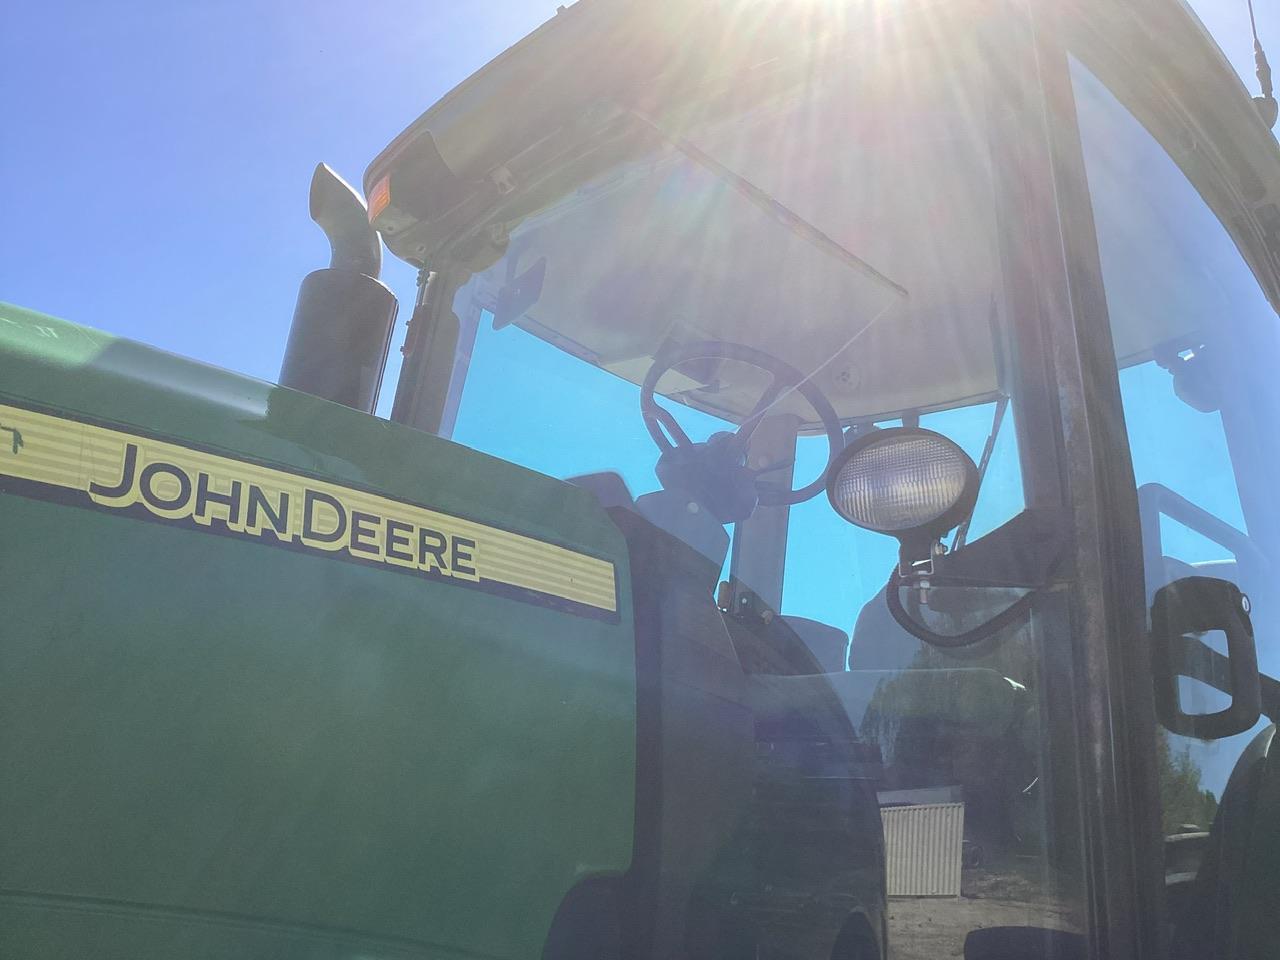 John Deere 8330 Tractor MFWD